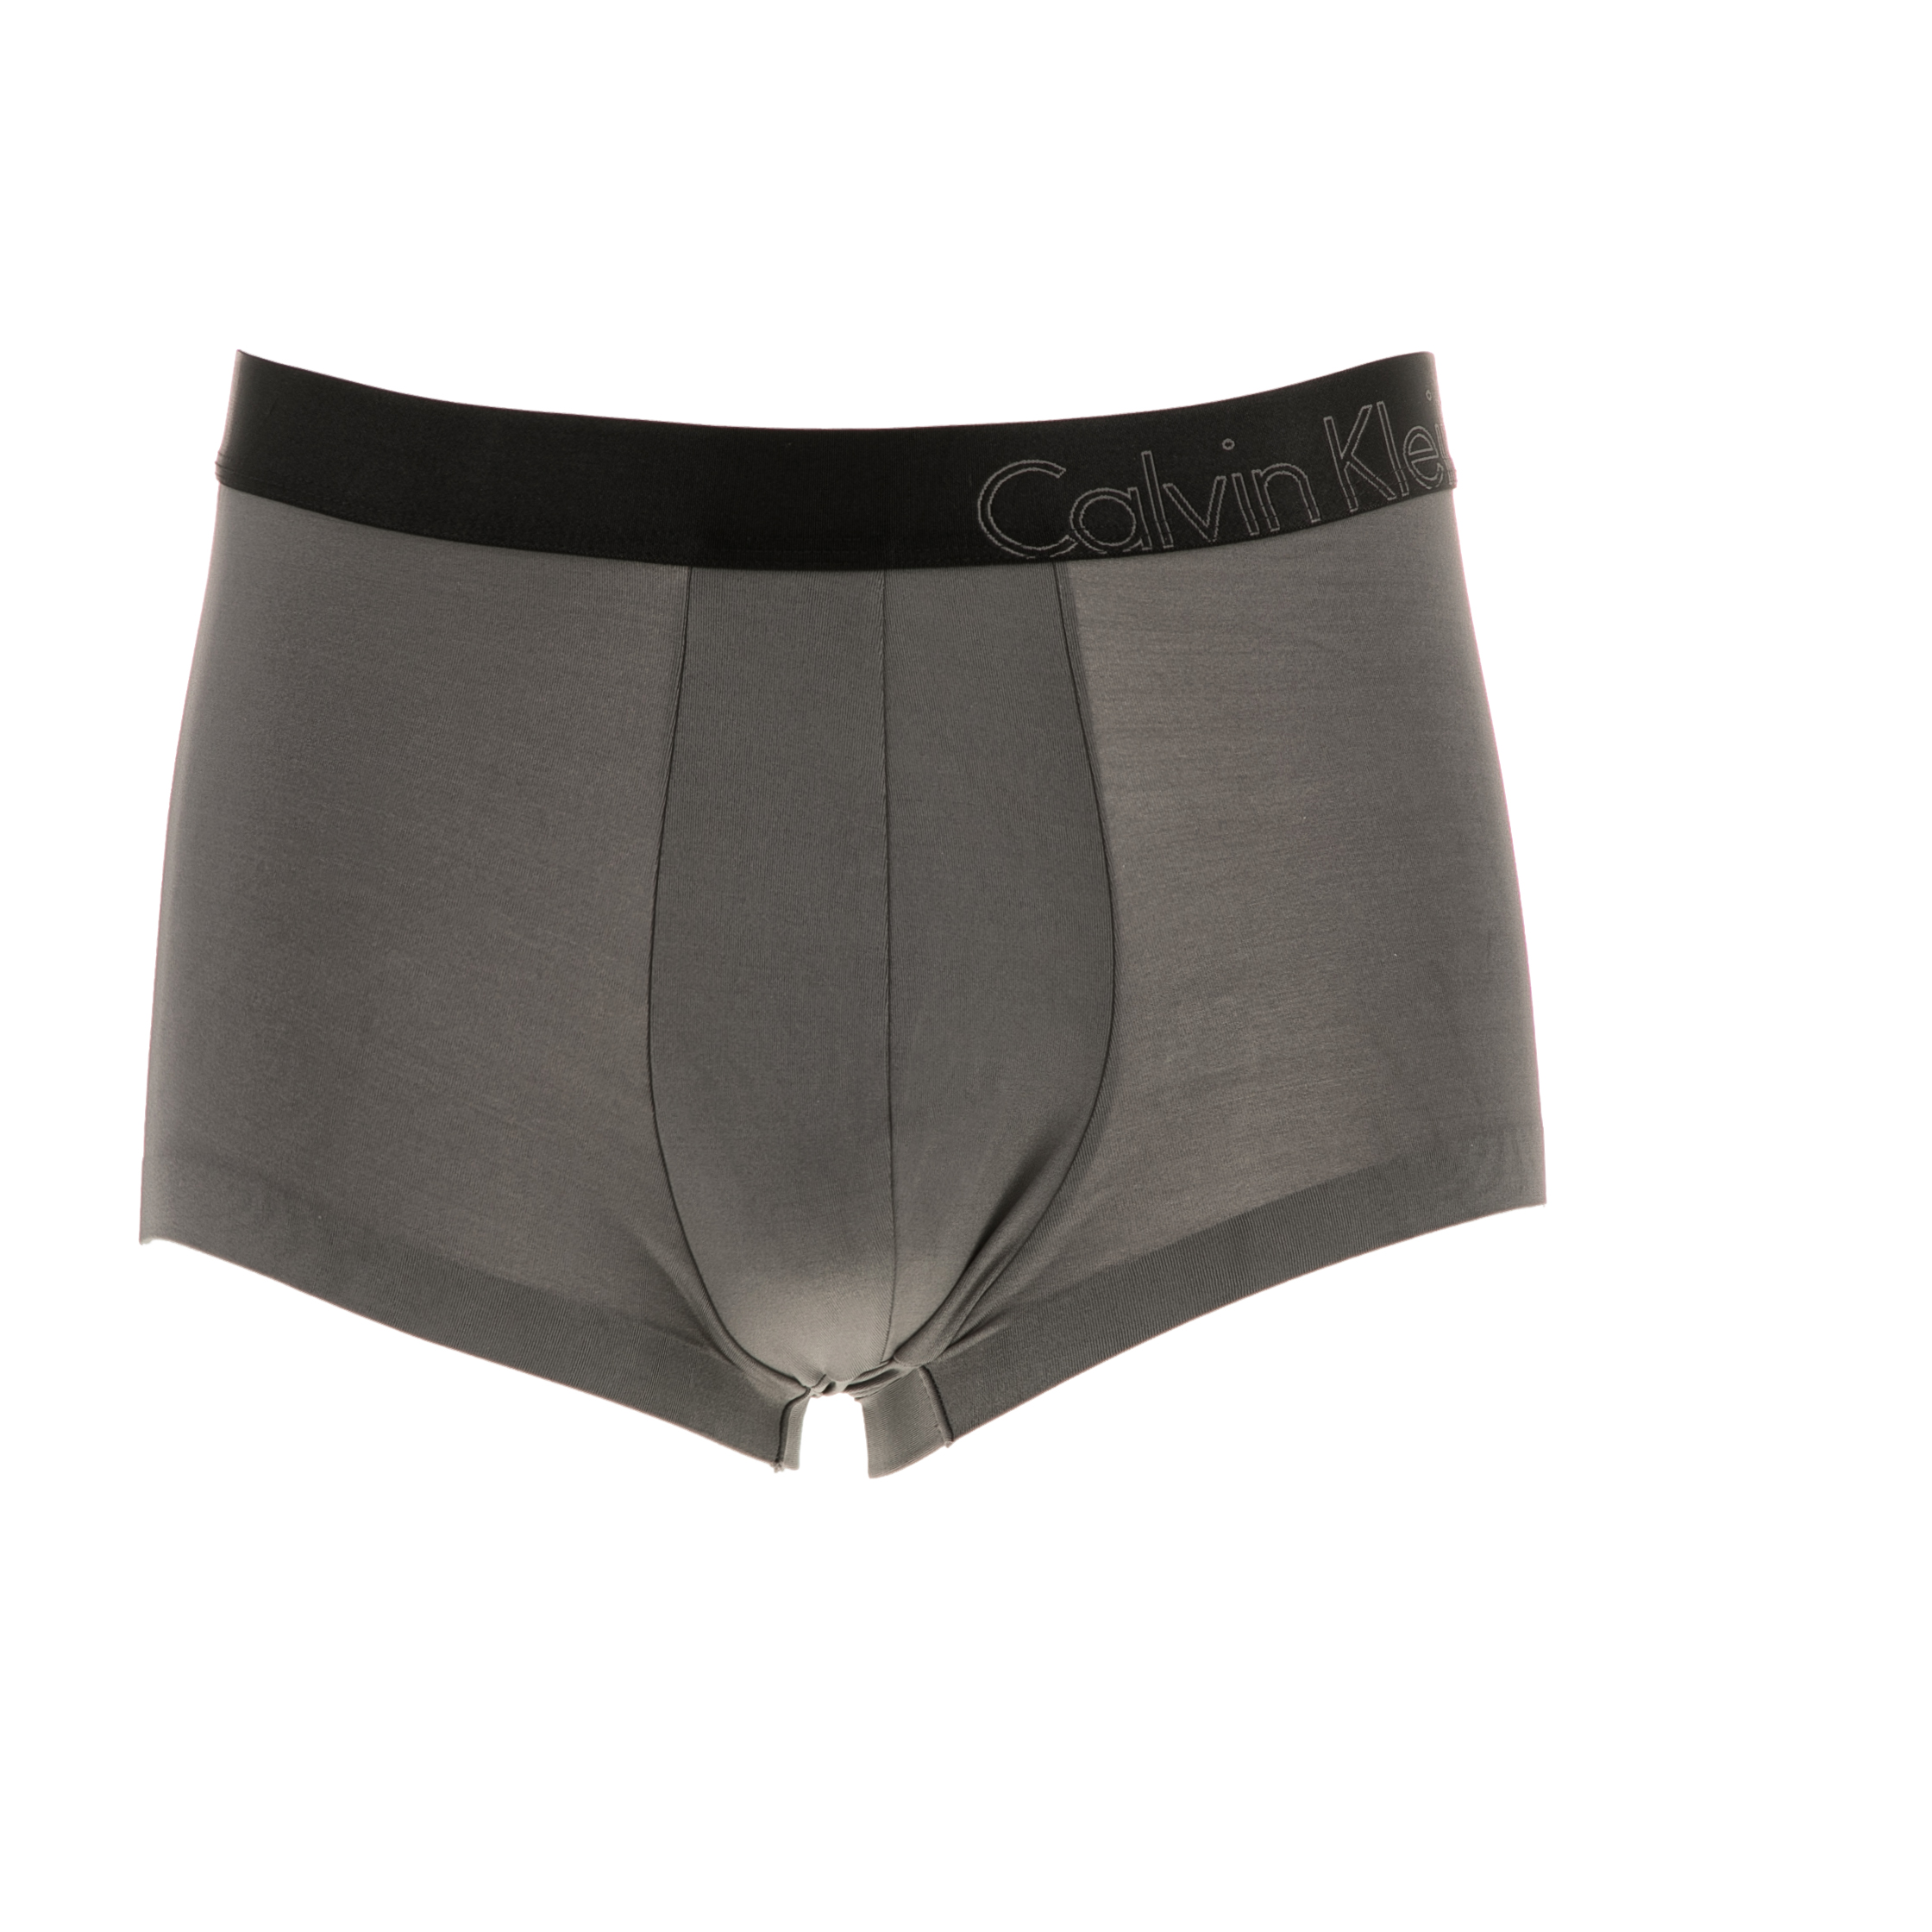 CK UNDERWEAR - Ανδρικό εσώρουχο μπόξερ CK Underwear γκρι